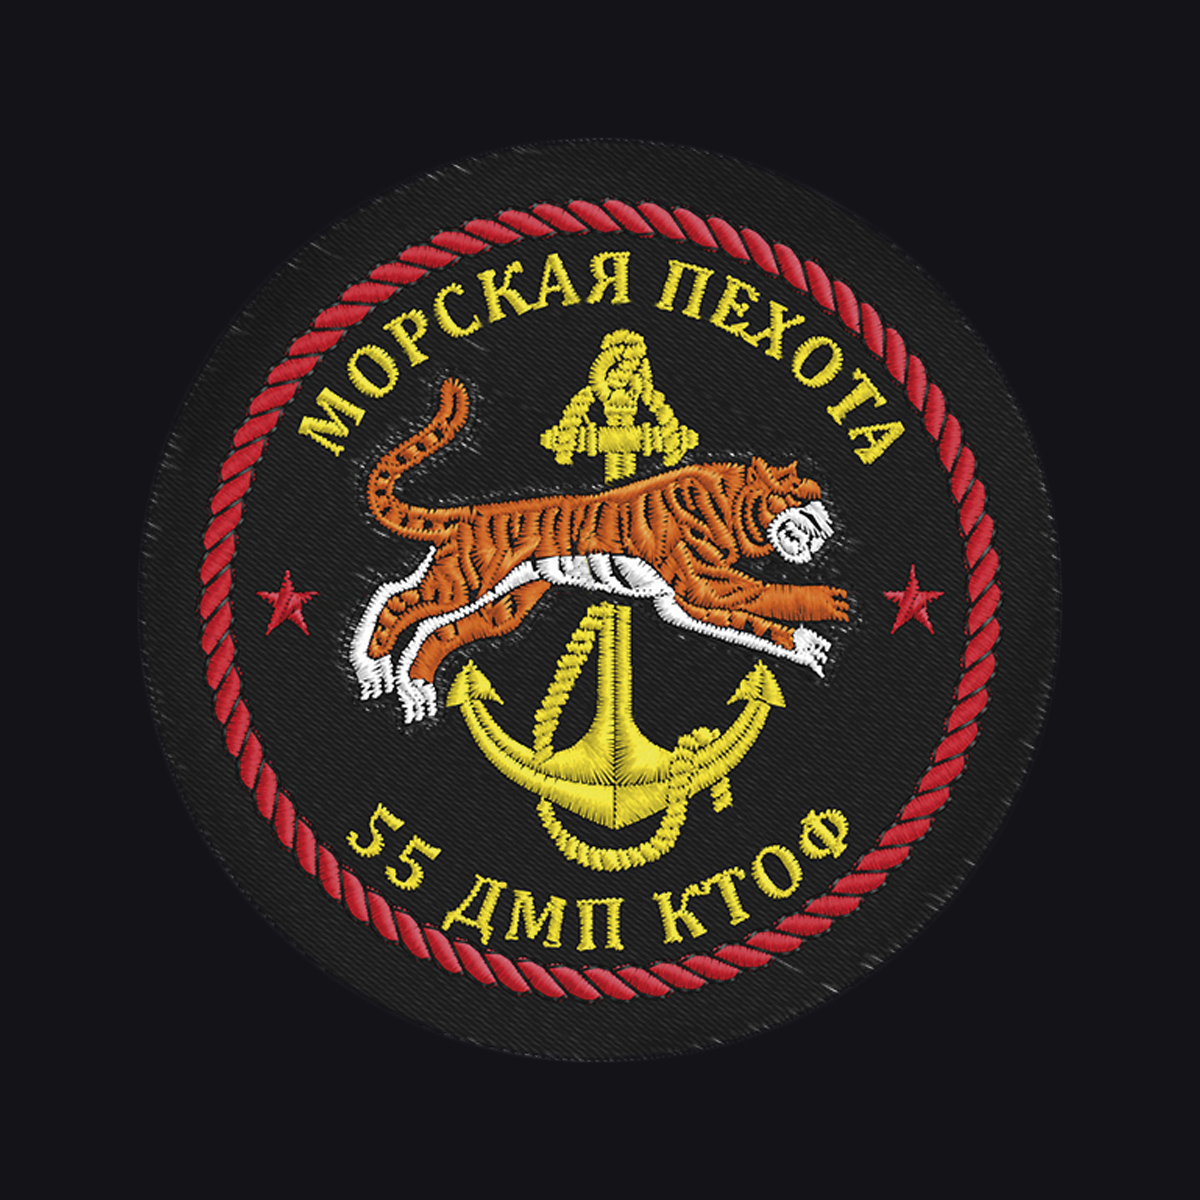 55 дивизия морской пехоты владивосток фото